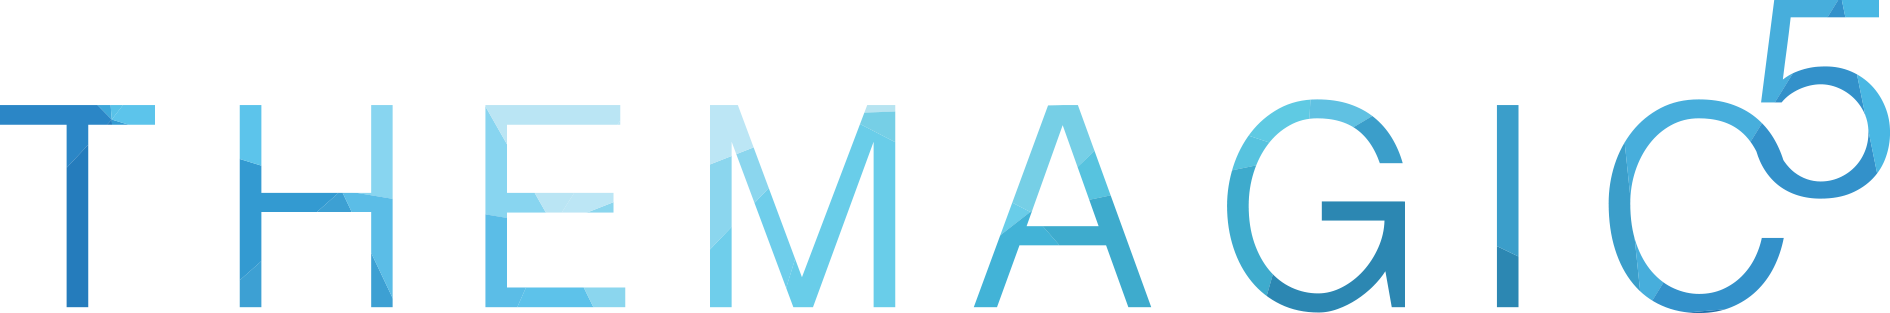 TM5_Logotype-1